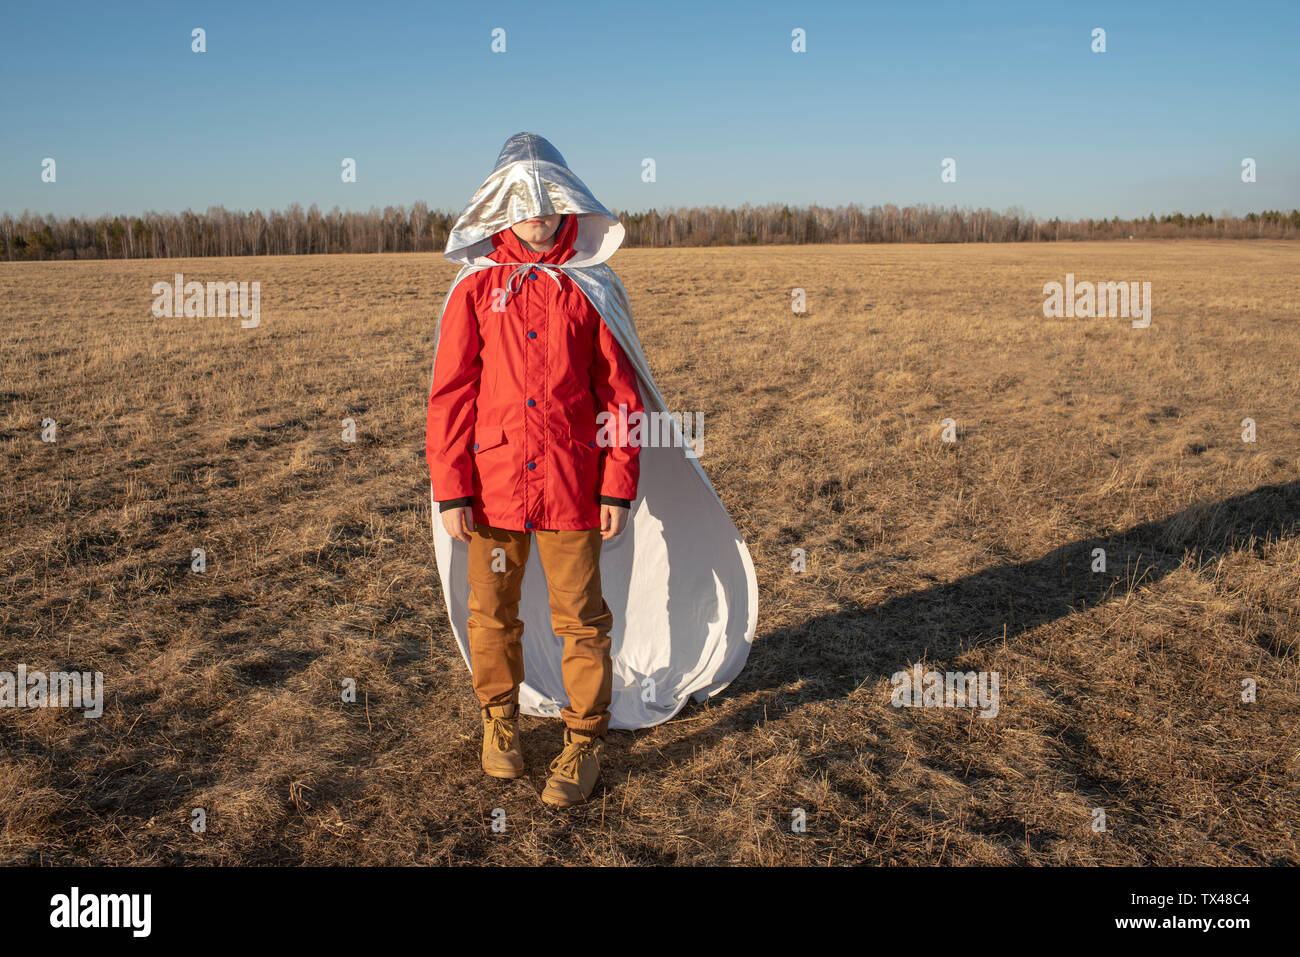 Capot de superhero costume couvrant visage du garçon dans un paysage de steppe Banque D'Images